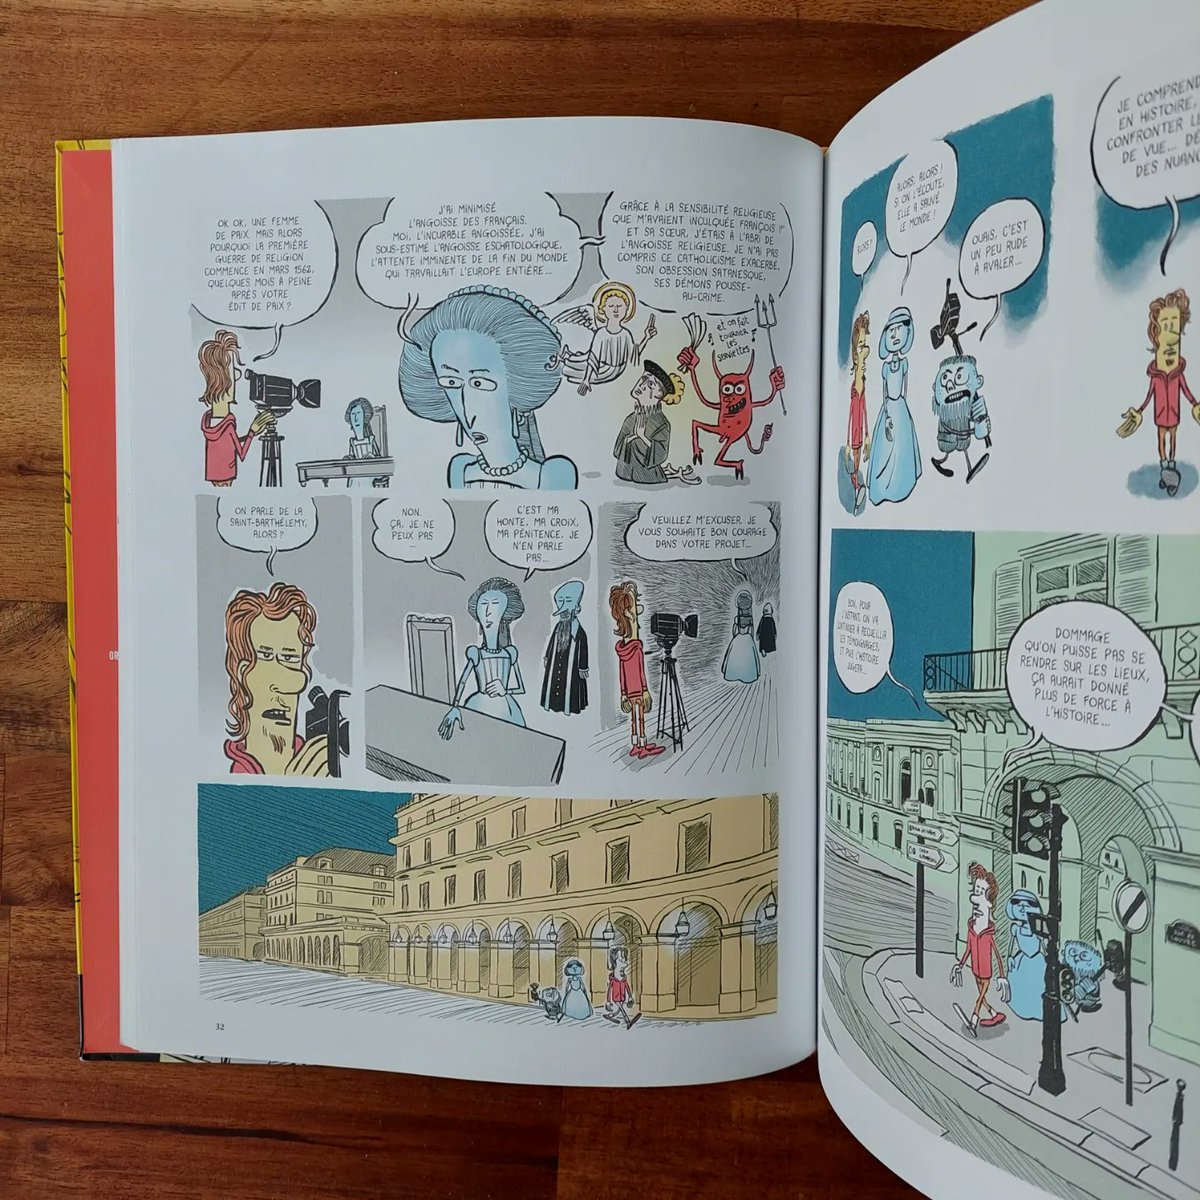 Drôle et passionnant à la fois, grand bravo à Jérémie Foa et Pochep pour le tome 10 de l'histoire dessinée de la France Sacrée guerres' @anakroniks @PochepPolitburo